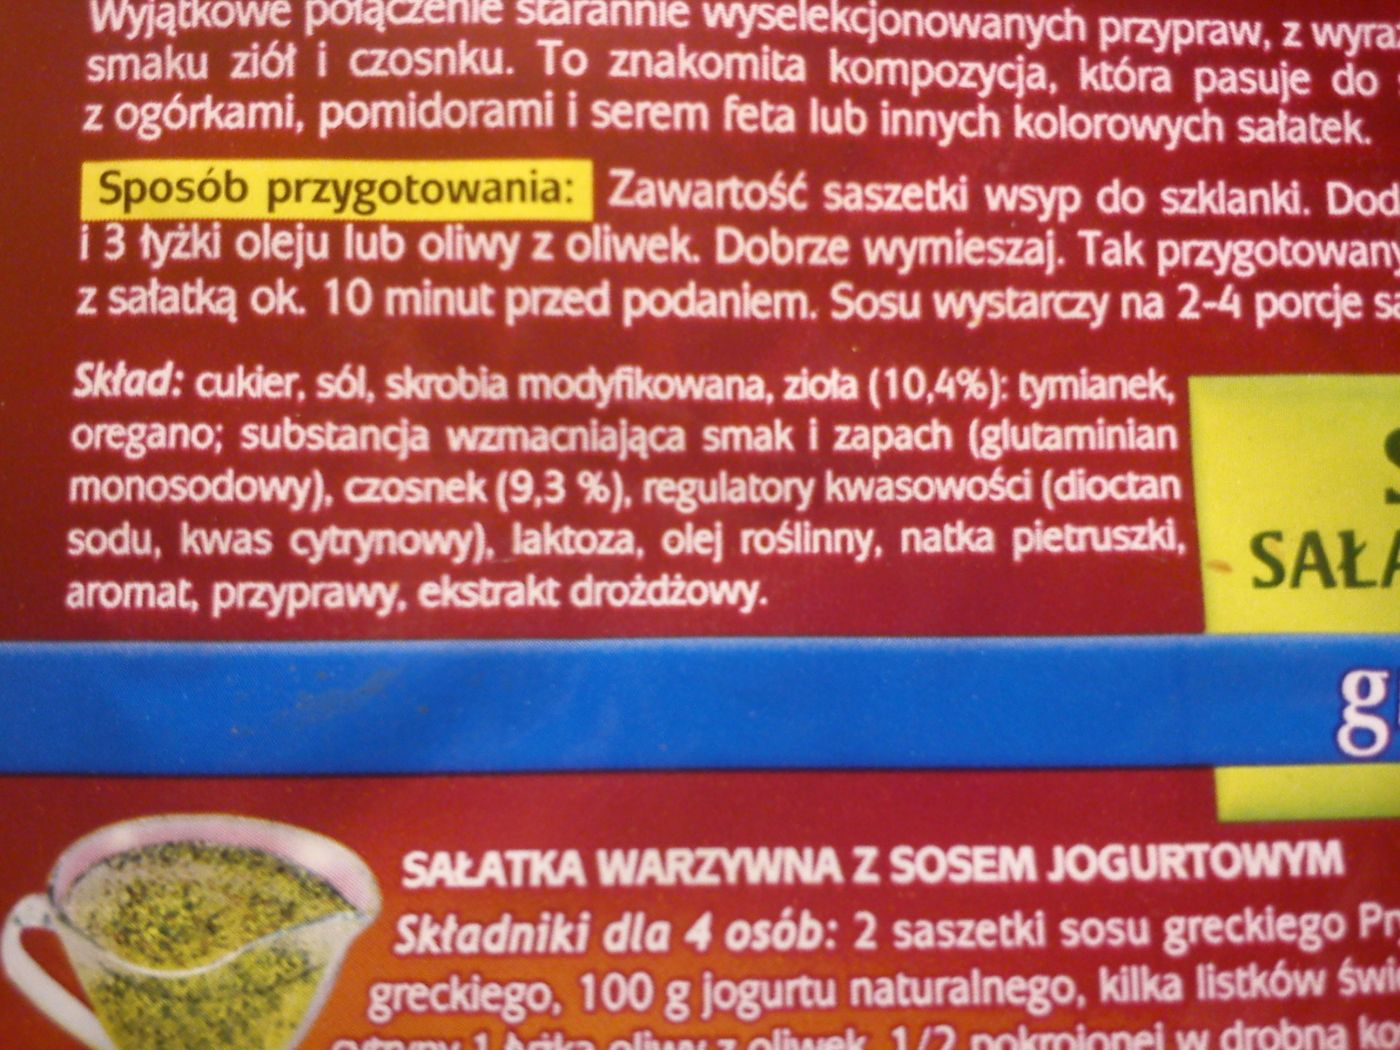 Sos sałakowy grecki ziołowo-czosnkowy Prymat 